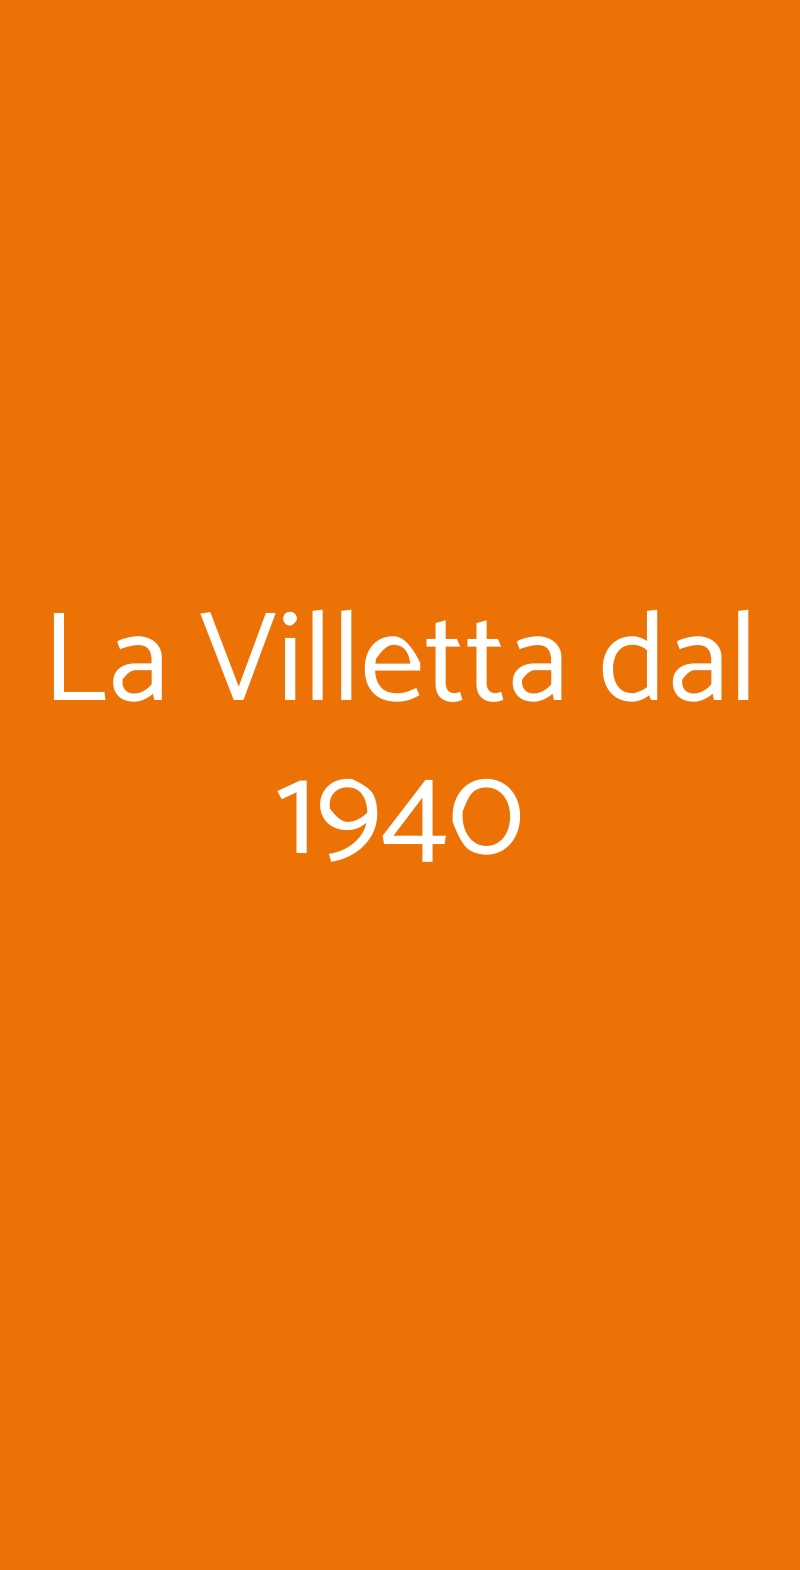 La Villetta dal 1940 Roma menù 1 pagina